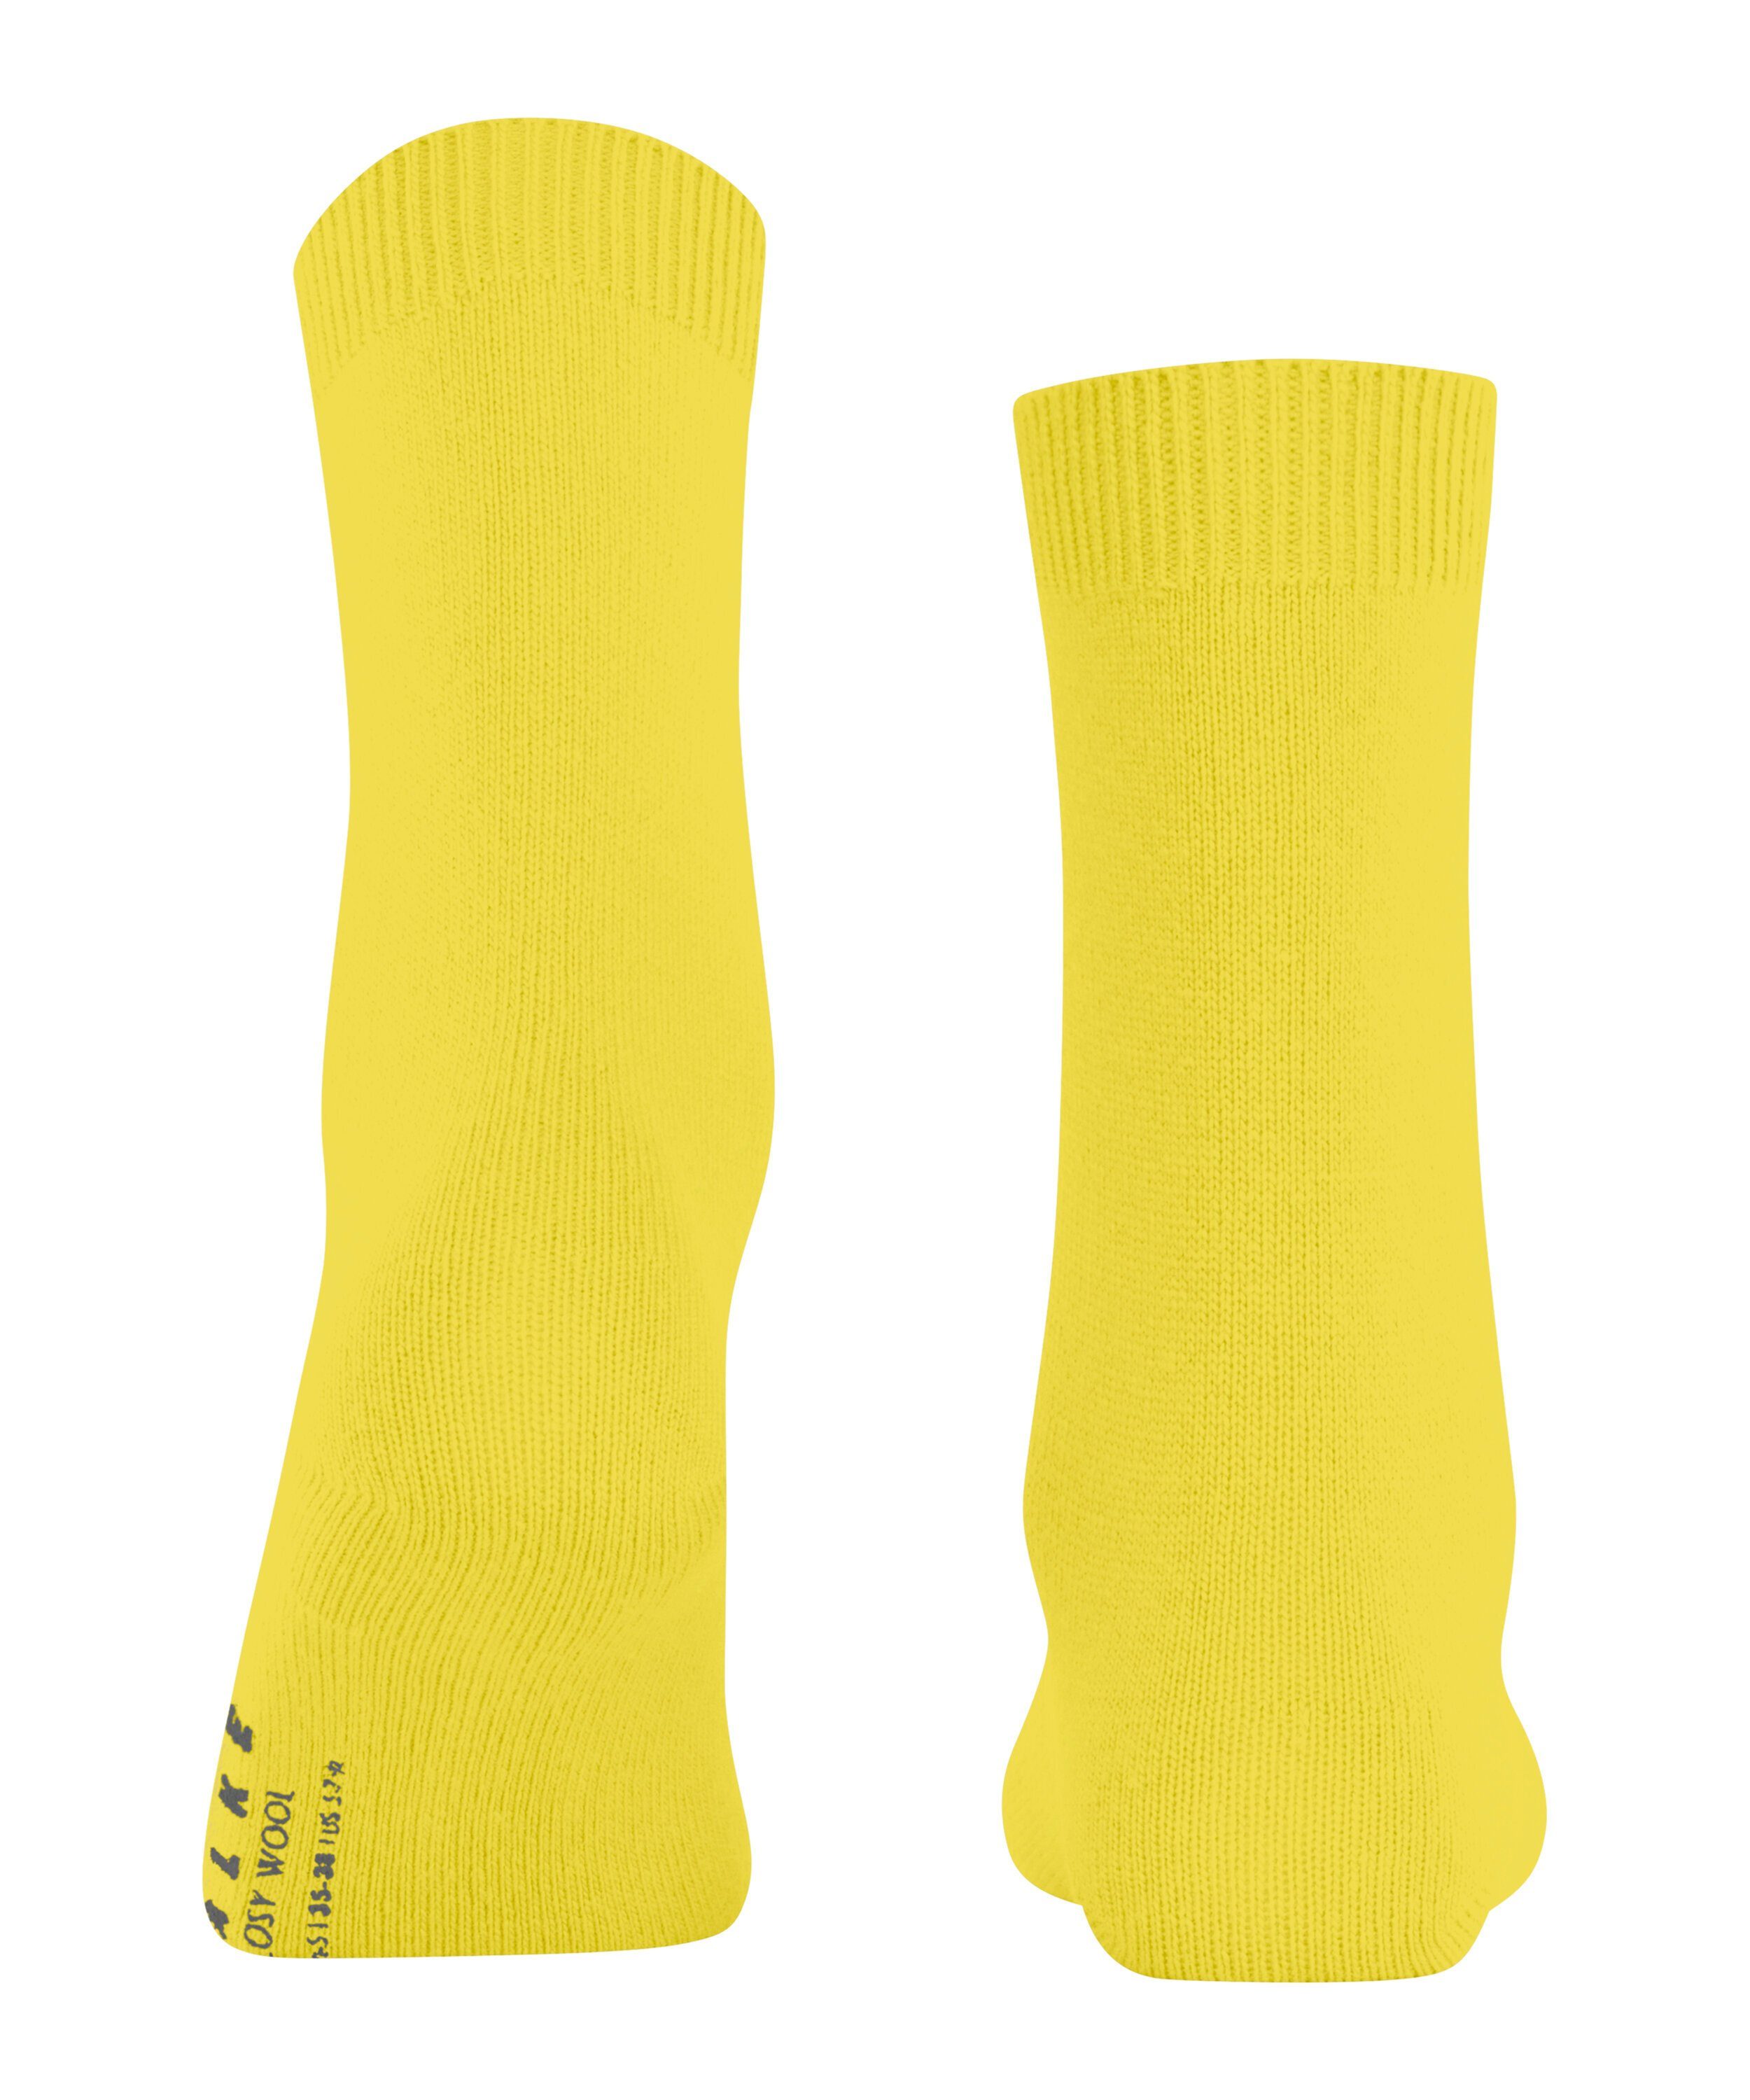 Wool (1-Paar) yellow-green FALKE Cosy Socken (1390)